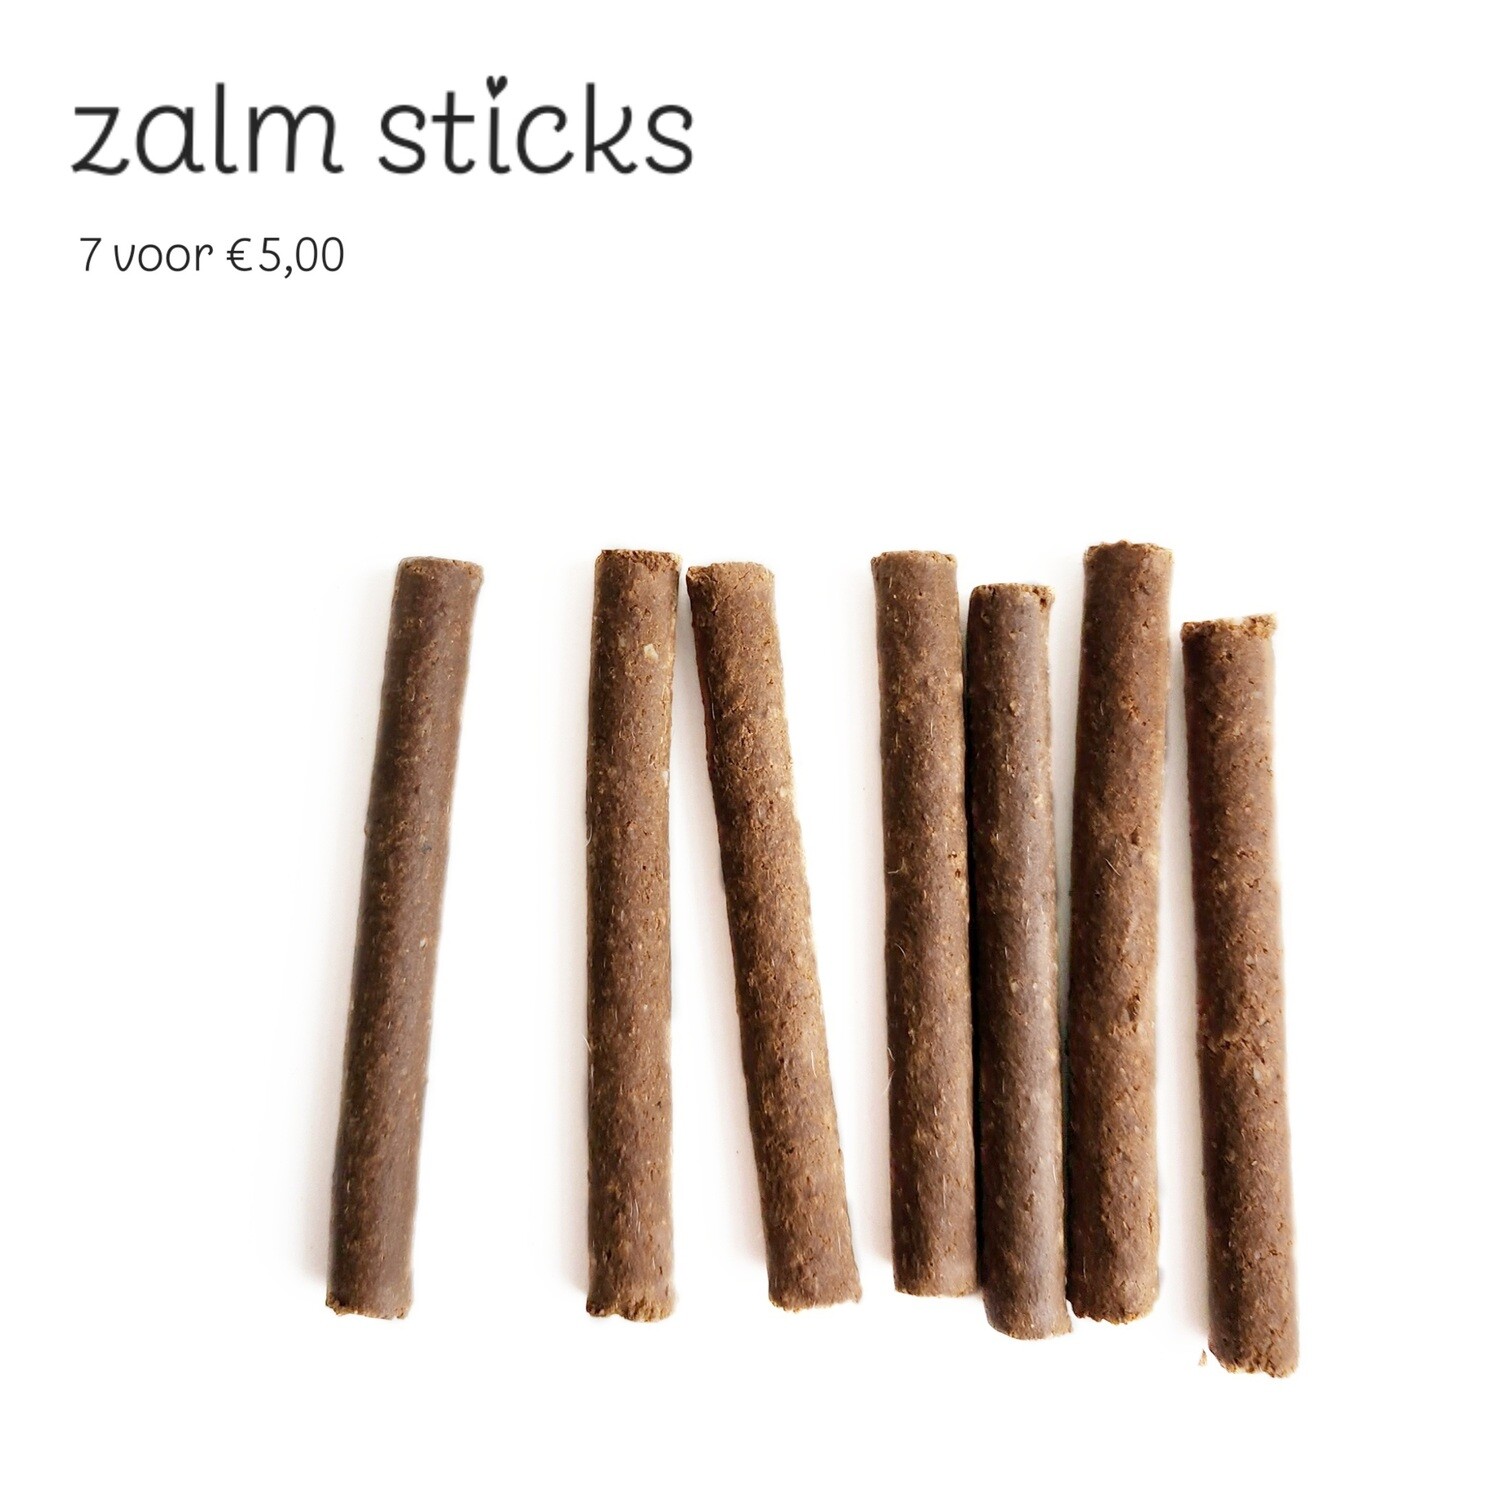 Zalm sticks